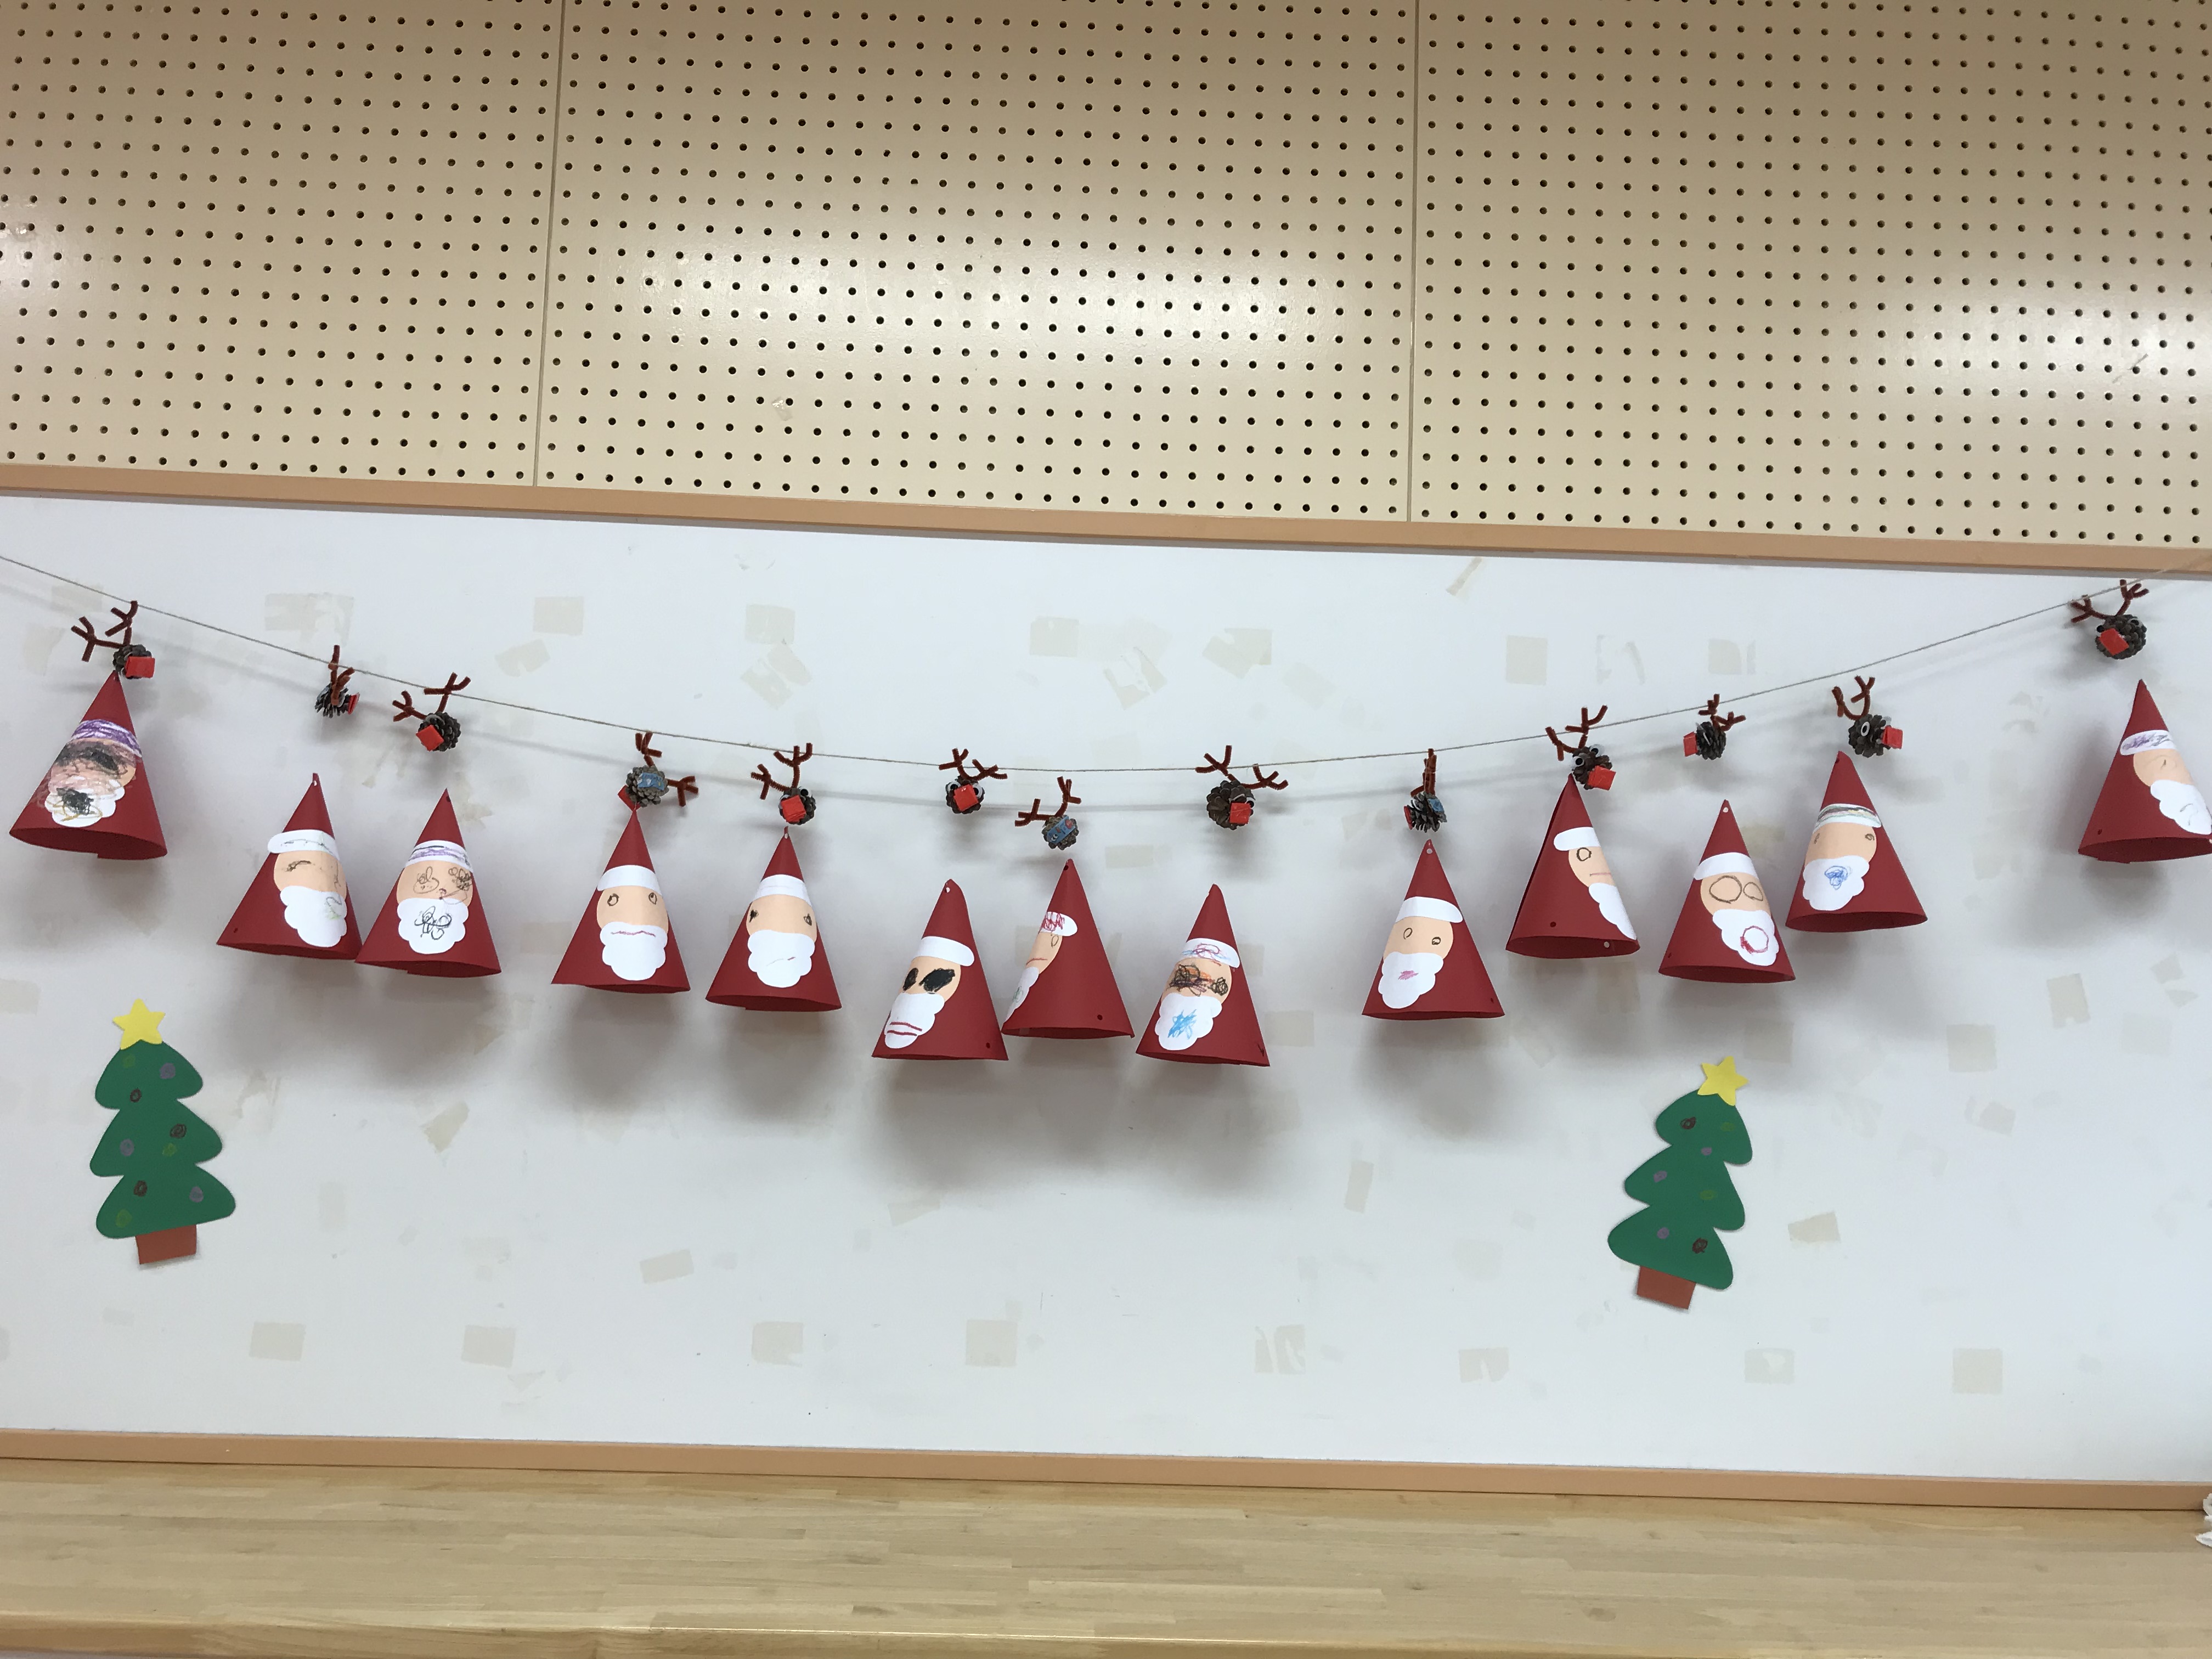 2歳児 クリスマス製作したよ すえさみこども園 石川県小松市